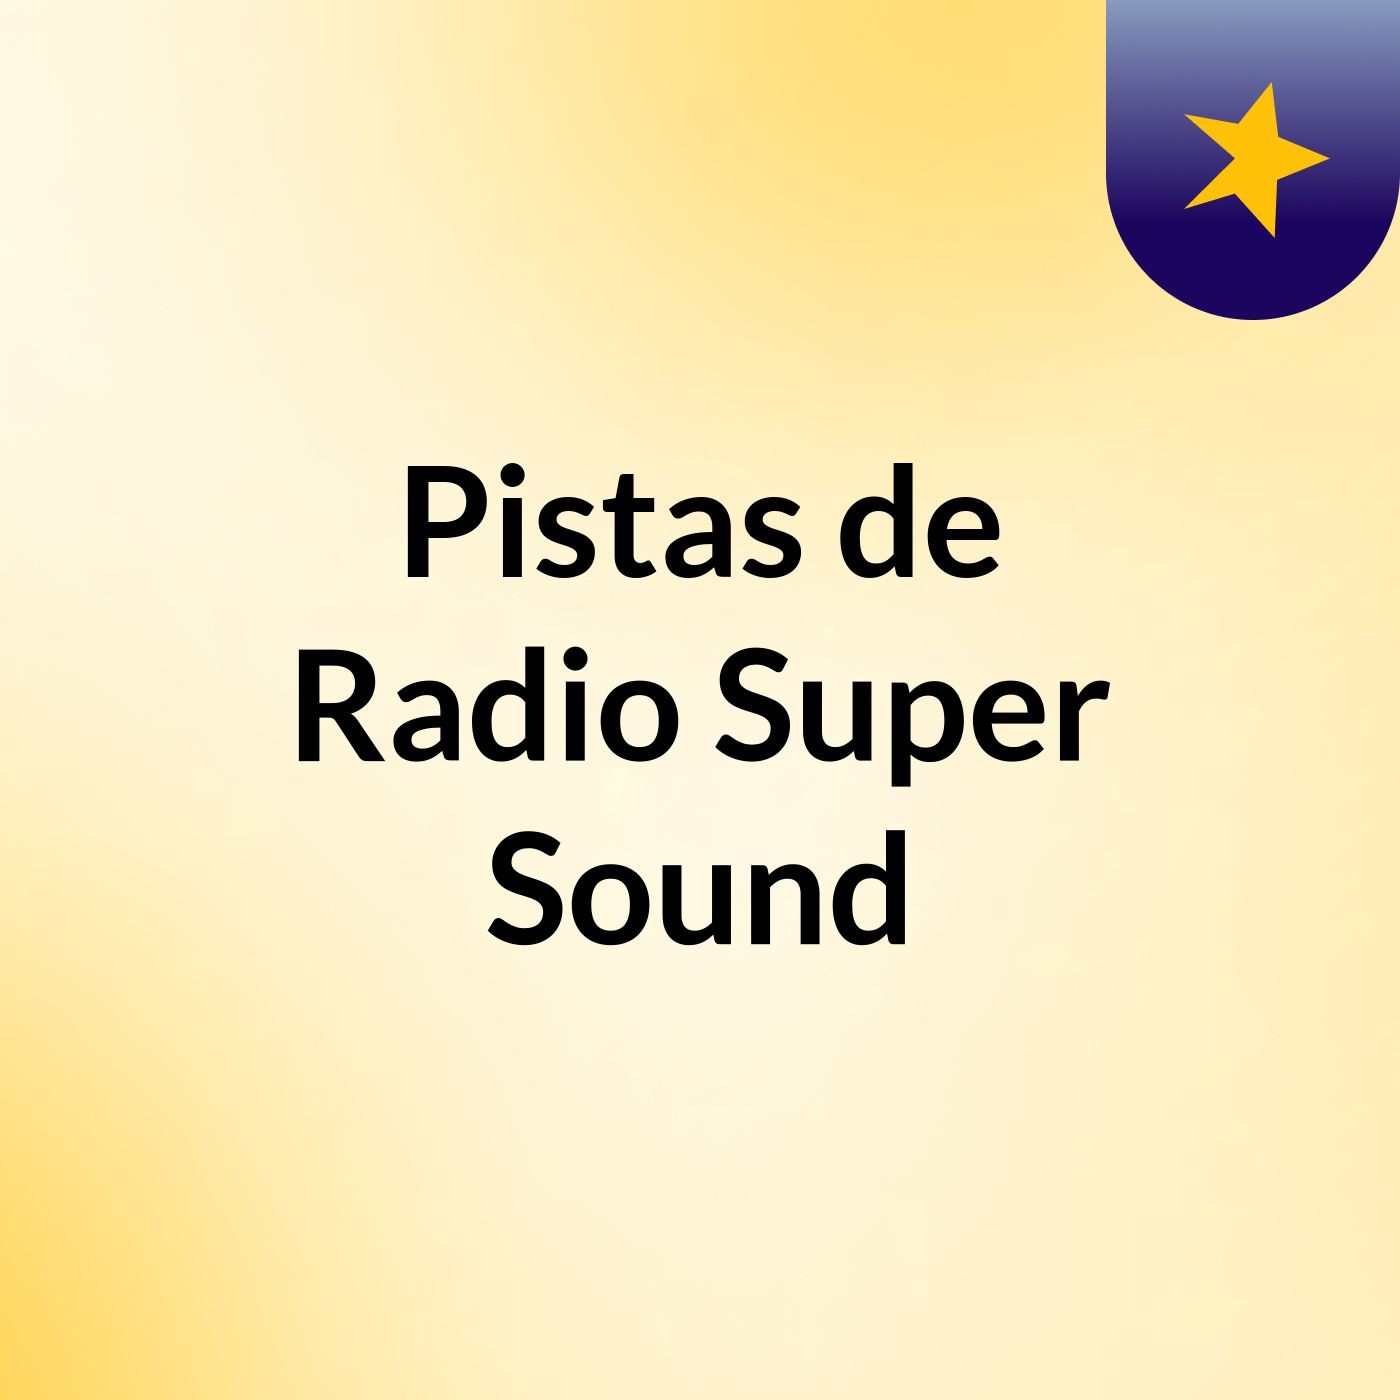 Pistas de Radio Super Sound